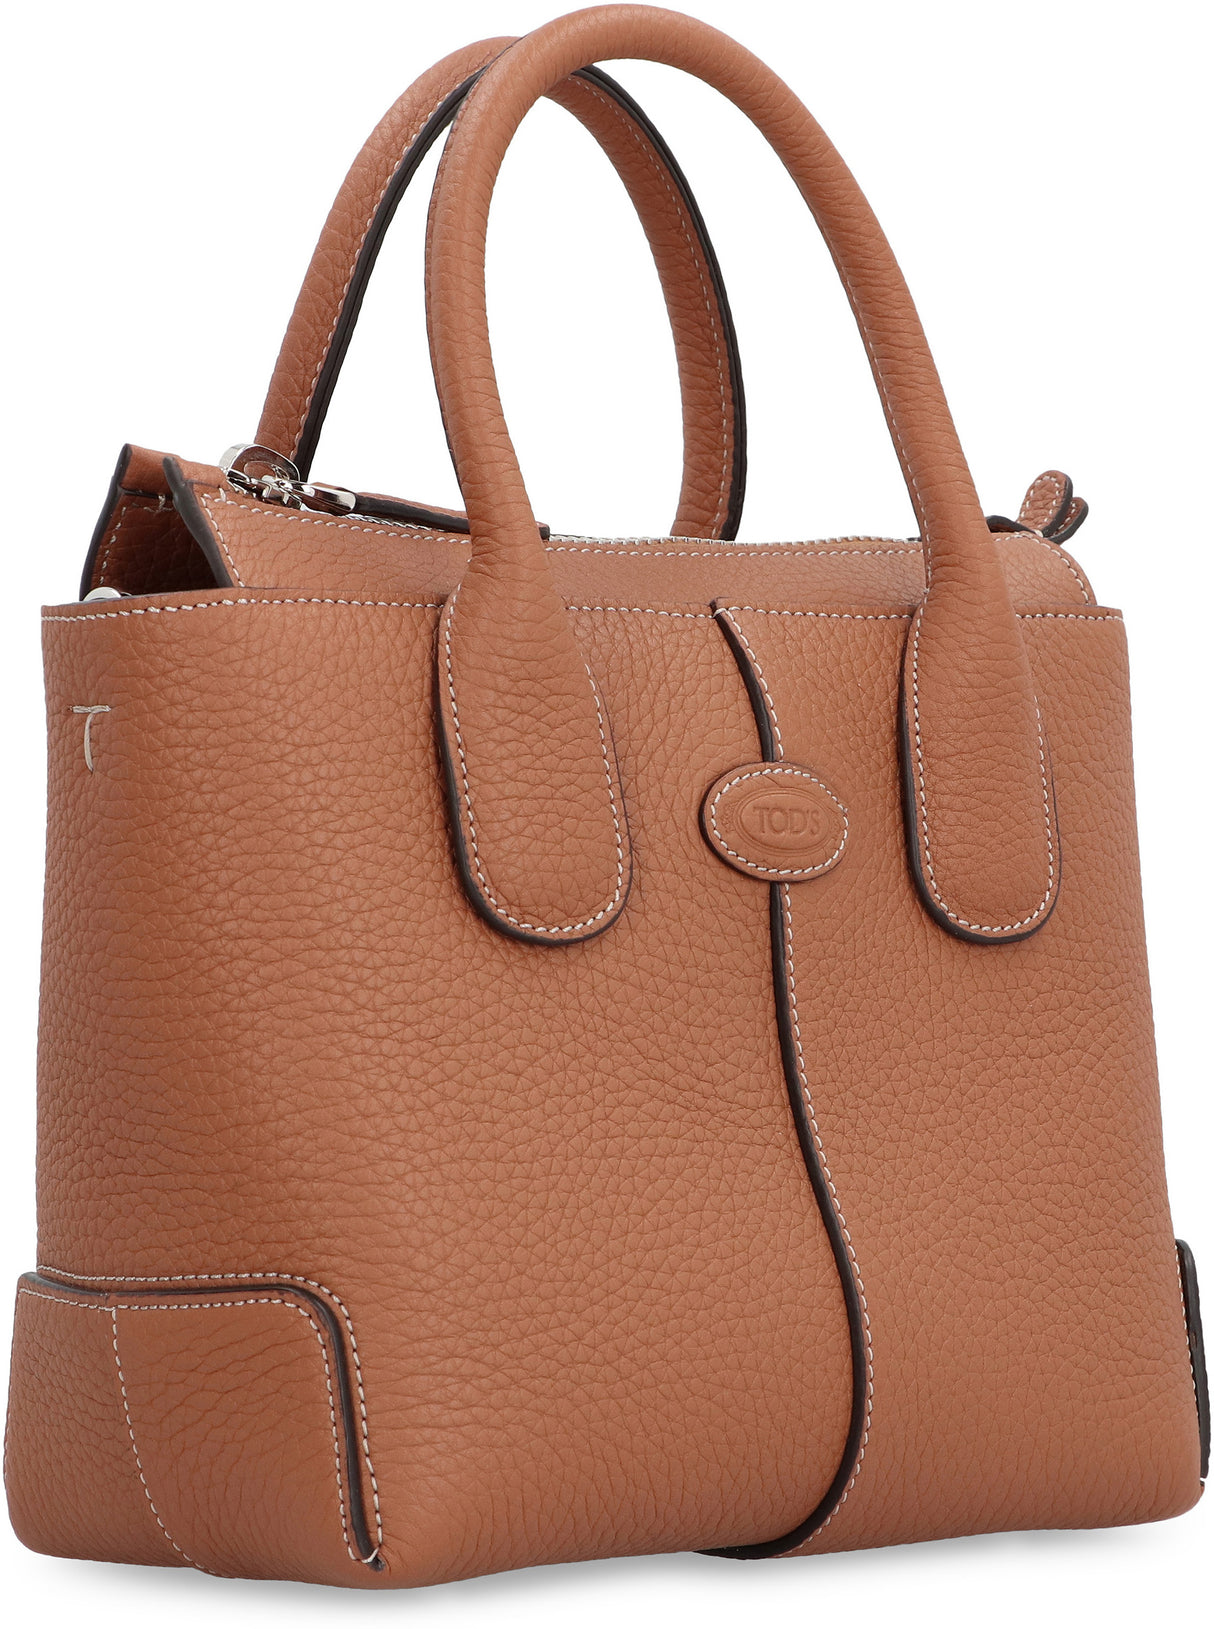 TOD'S Peppled Calfskin Tote Handbag with Adjustable Shoulder Strap - Saddle Brown